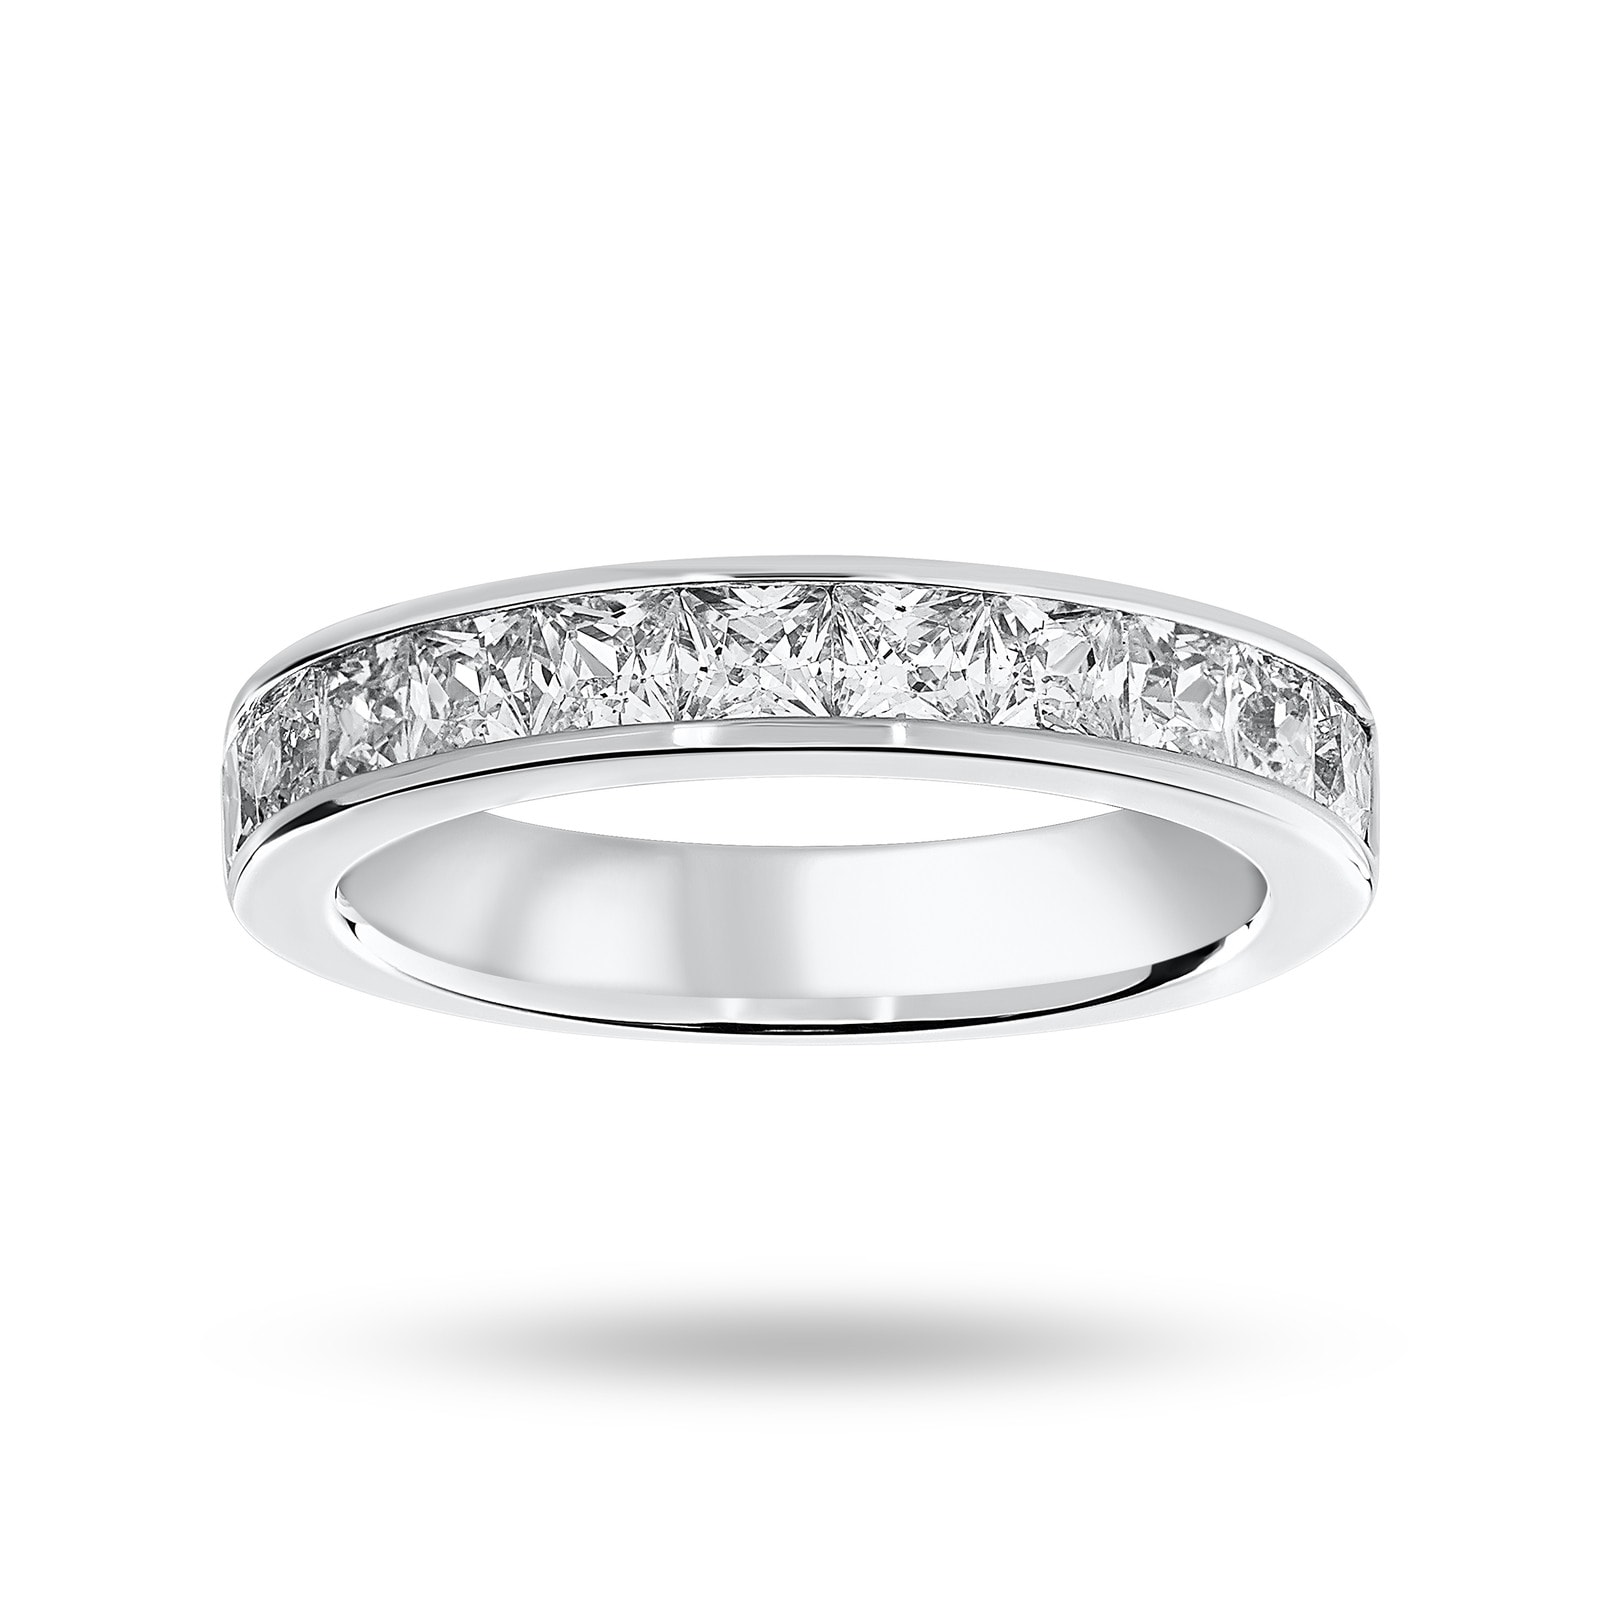 9 Carat White Gold 1.50 Carat Princess Cut Half Eternity Ring - Ring Size M